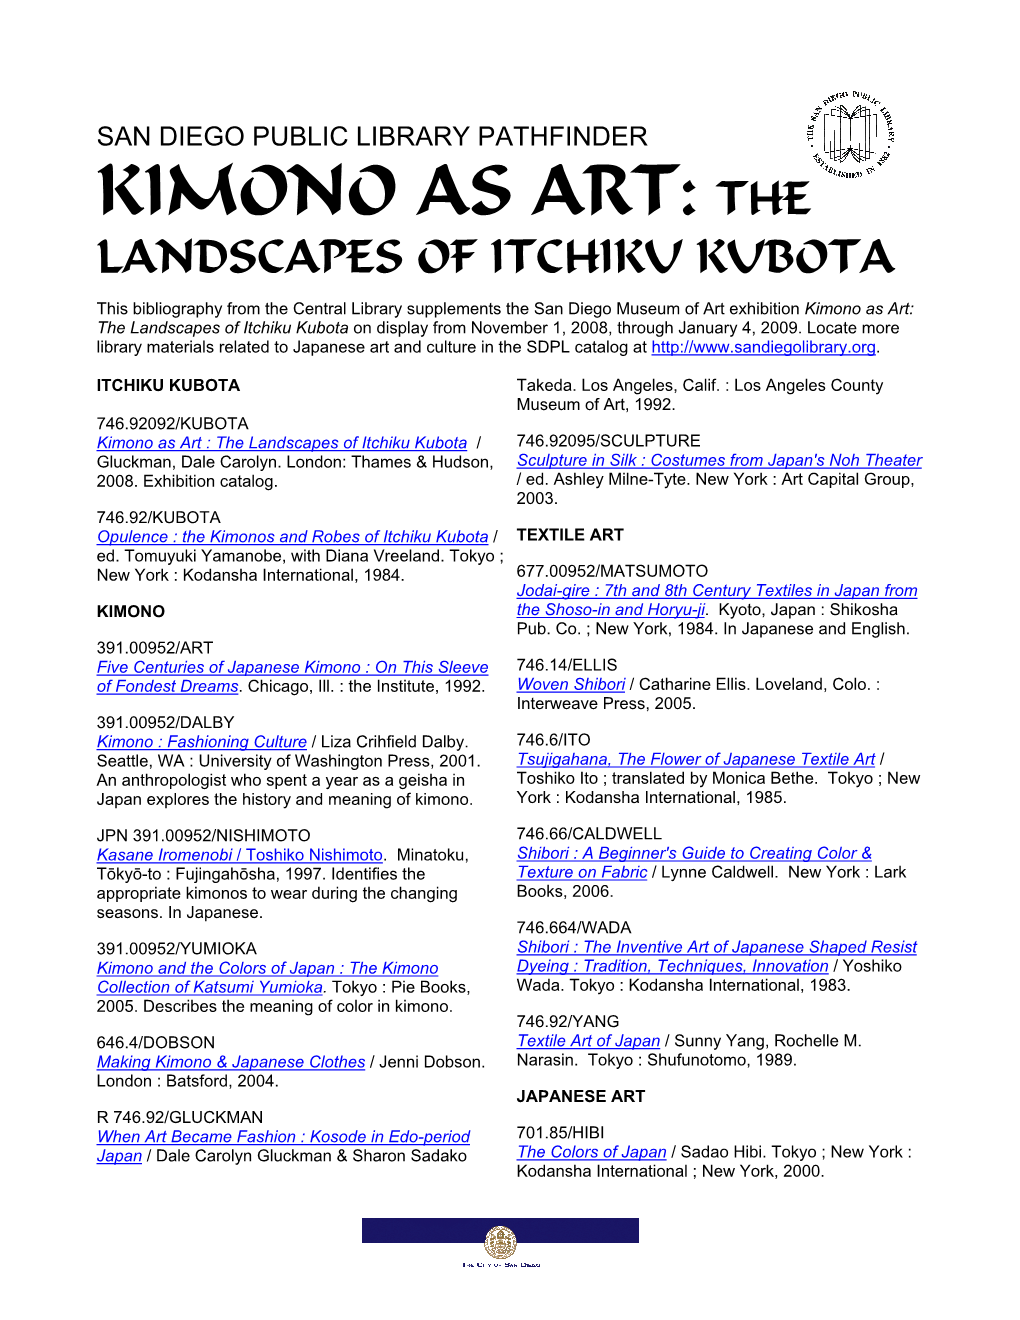 Kimono As Art: the Landscapes of Itchiku Kubota